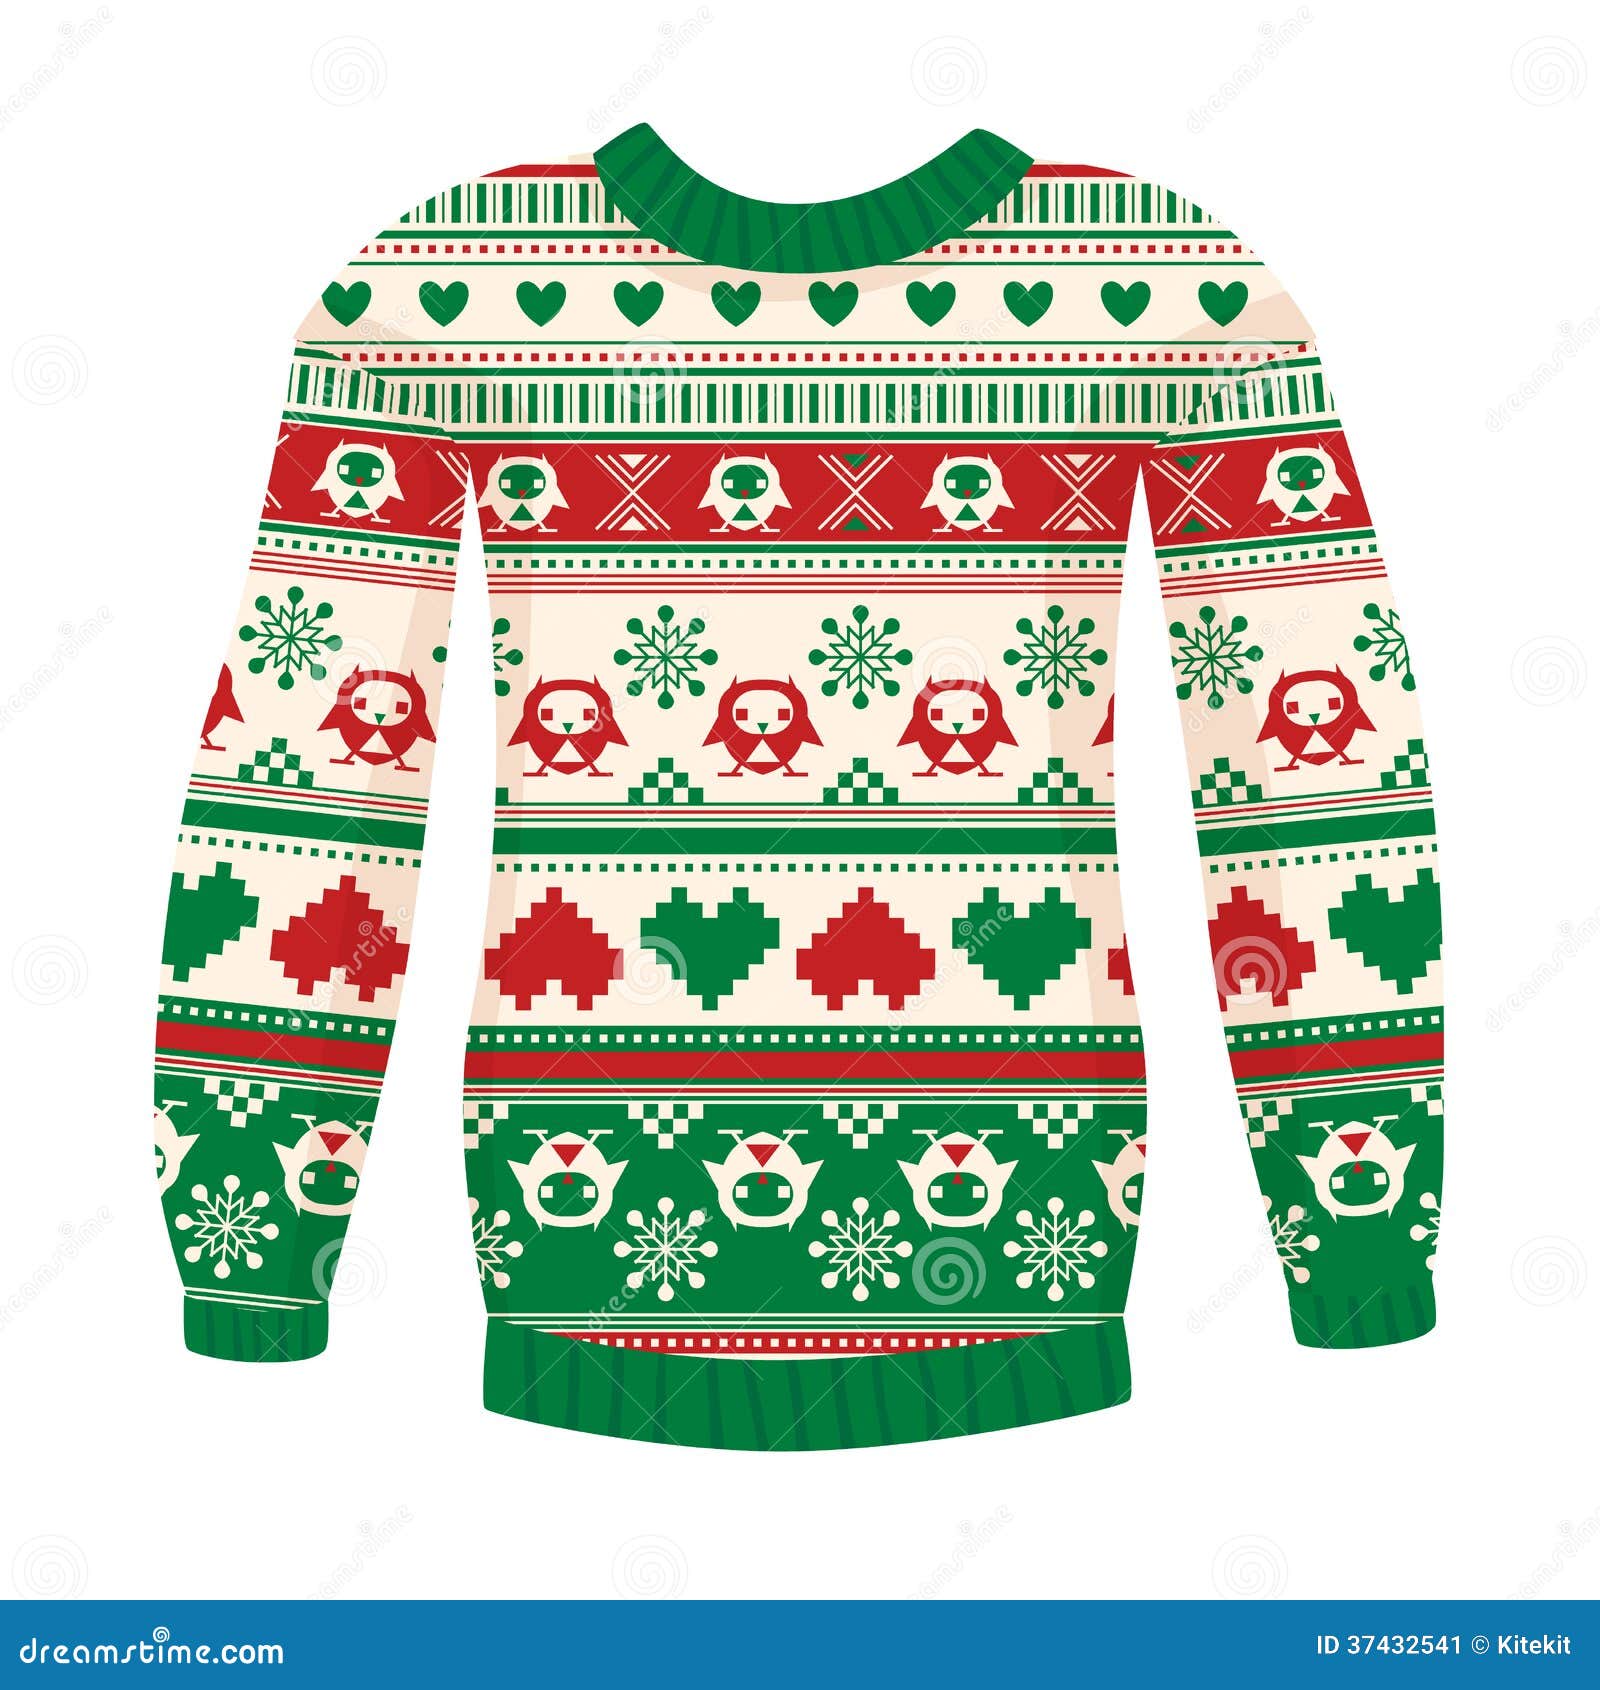 Ugly sweater in Scandinavian style with folk pattern. Winter cozy